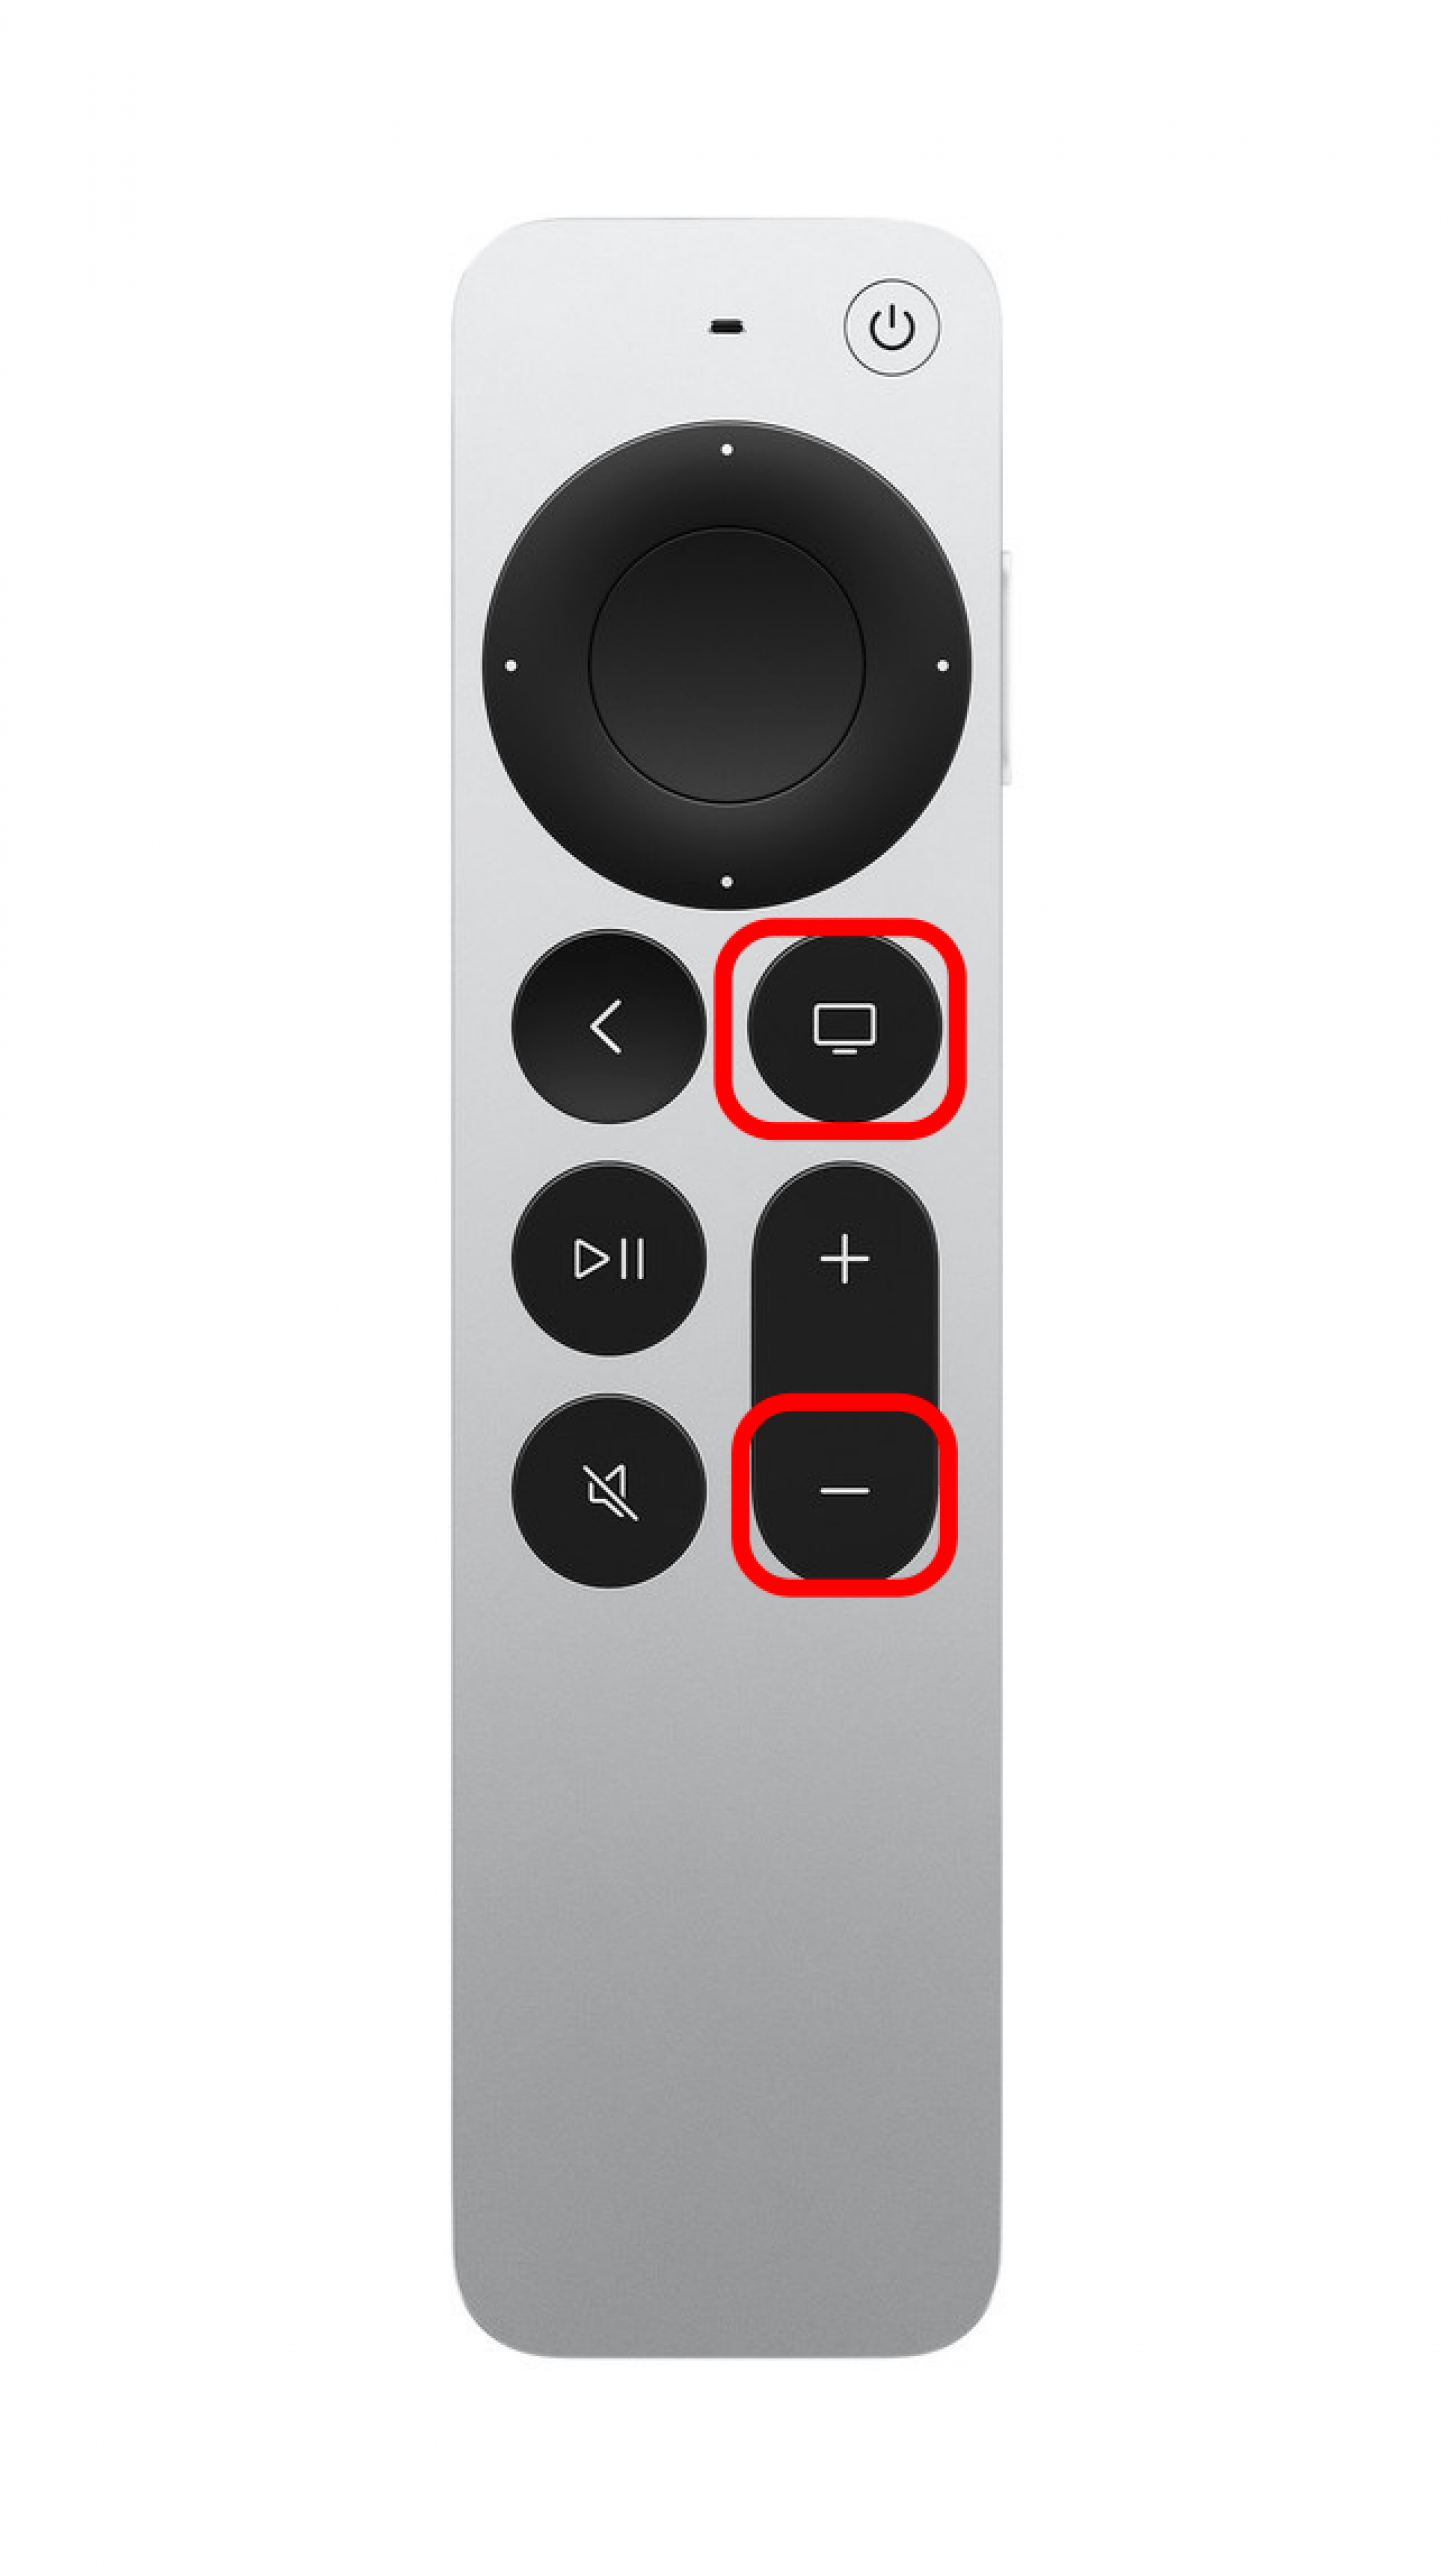 Halten Sie die TV-Taste und die Lauter-Taste gleichzeitig mindestens fünf Sekunden lang gedrückt.